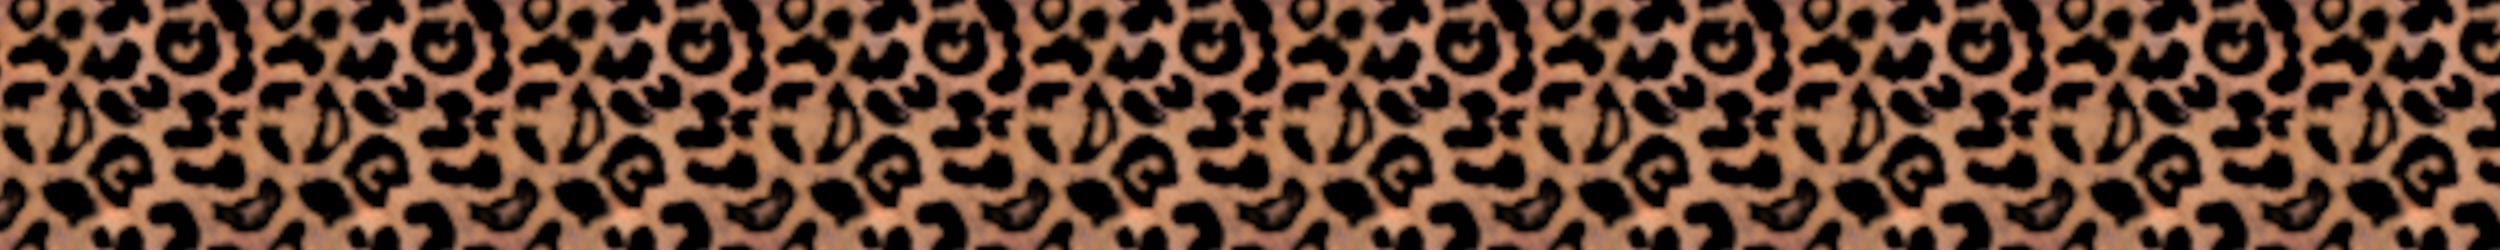 Leopard divider